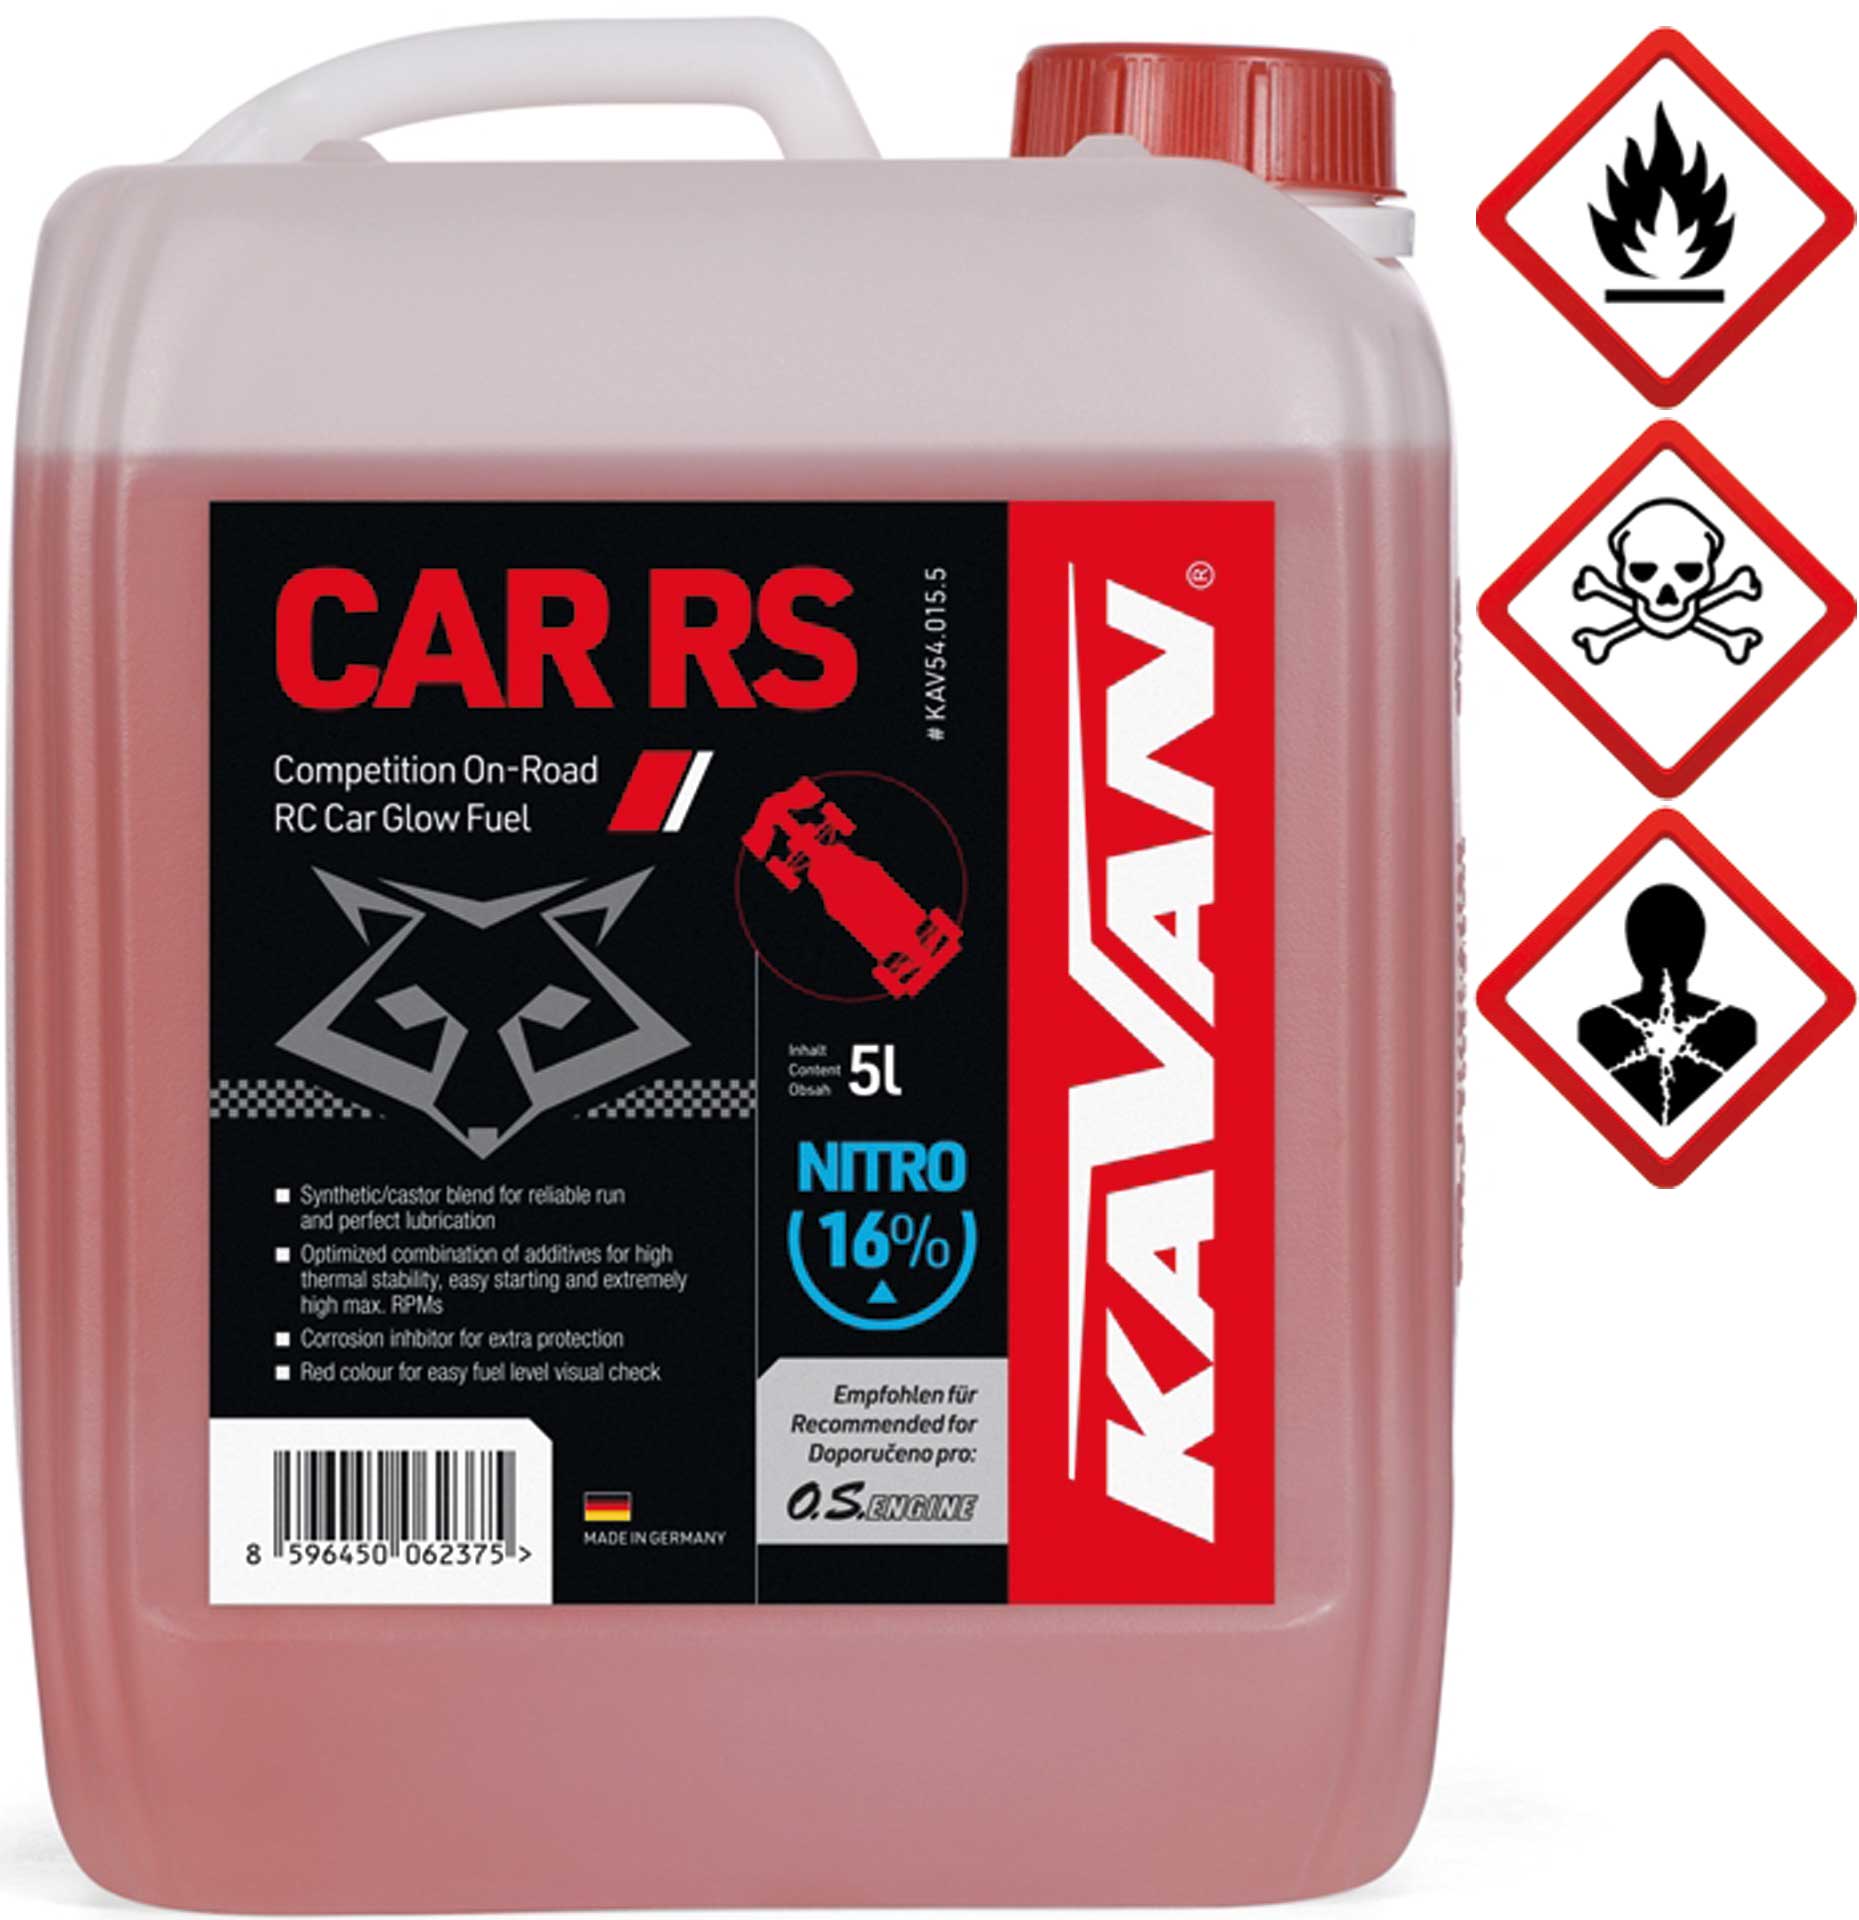 KAVAN Car RS 16% On Road Nitro 5 Liter Kraftstoff, Sprit, Treibstoff für Glühzünder-Motoren